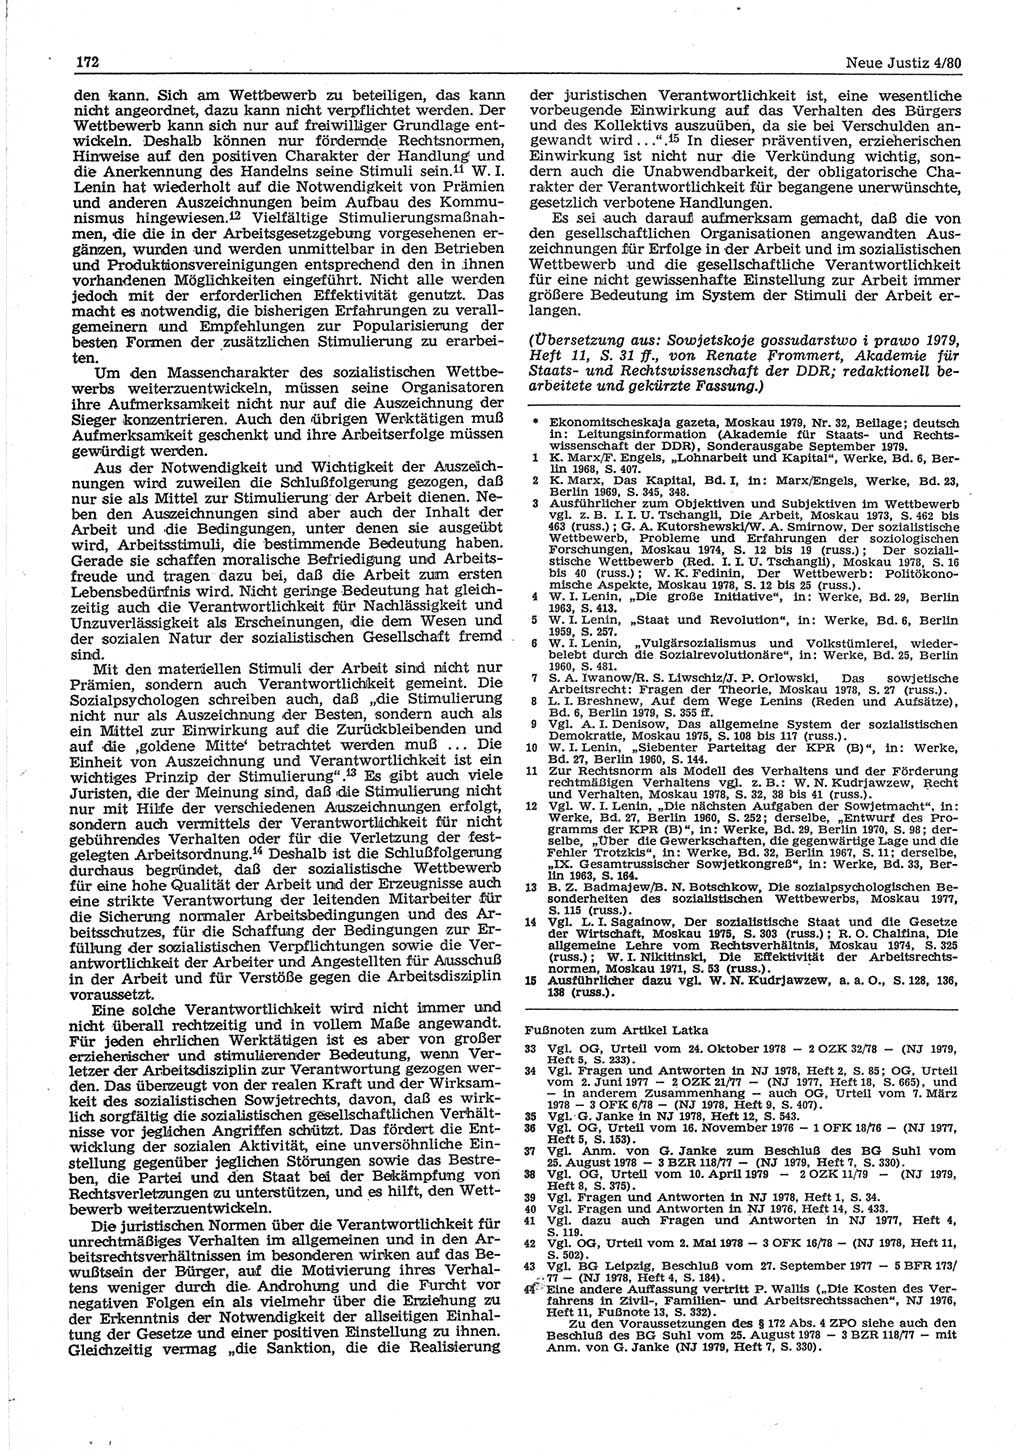 Neue Justiz (NJ), Zeitschrift für sozialistisches Recht und Gesetzlichkeit [Deutsche Demokratische Republik (DDR)], 34. Jahrgang 1980, Seite 172 (NJ DDR 1980, S. 172)